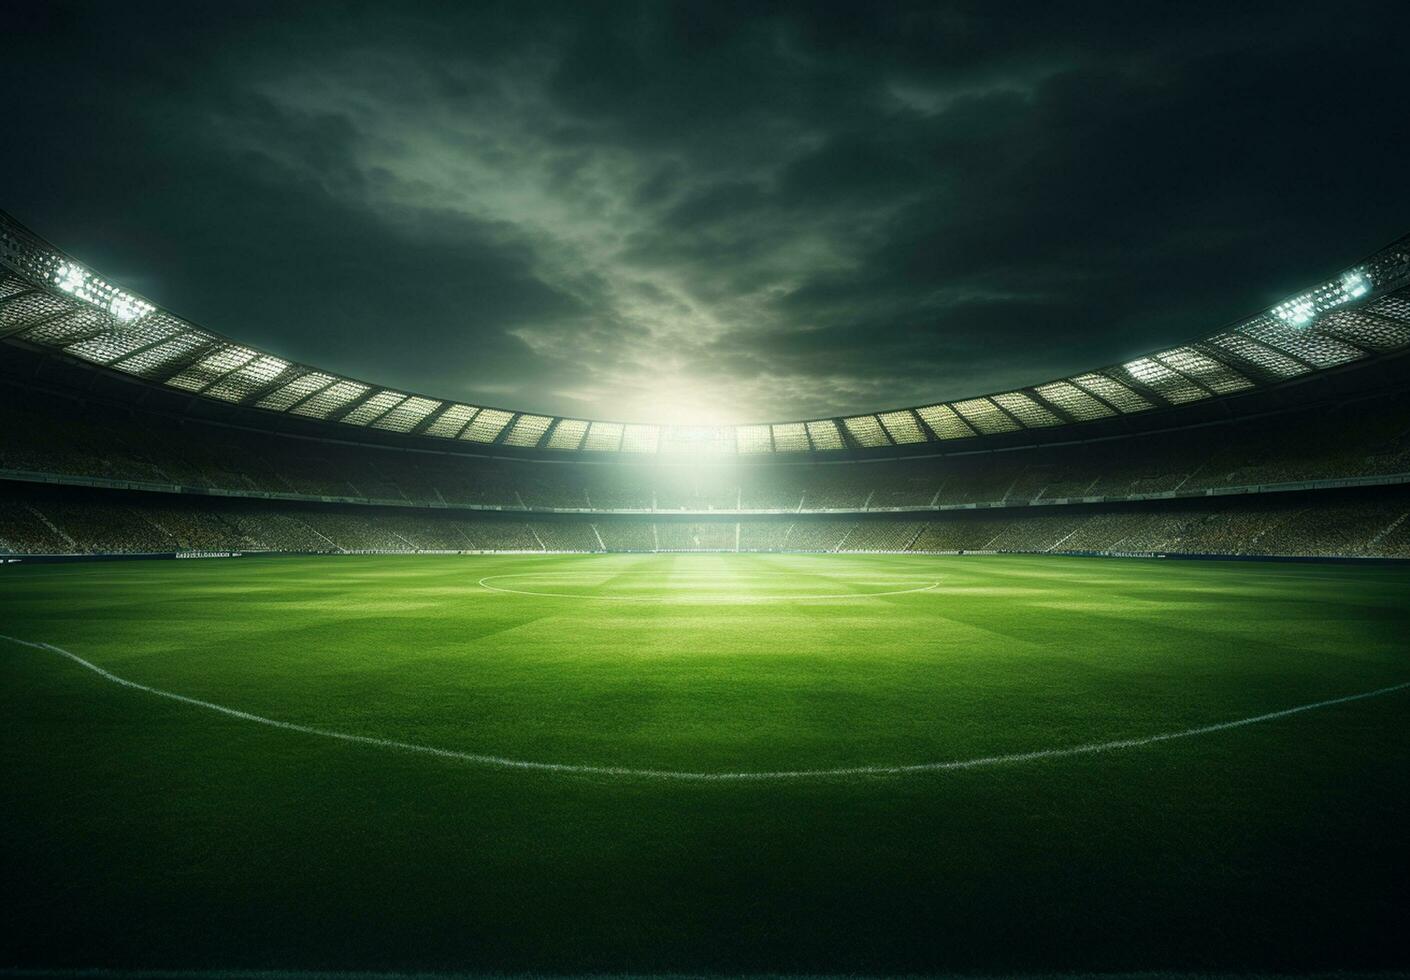 foto van een voetbal stadion Bij nacht met stadion licht. de stadion was gemaakt in 3d zonder gebruik makend van bestaande referenties